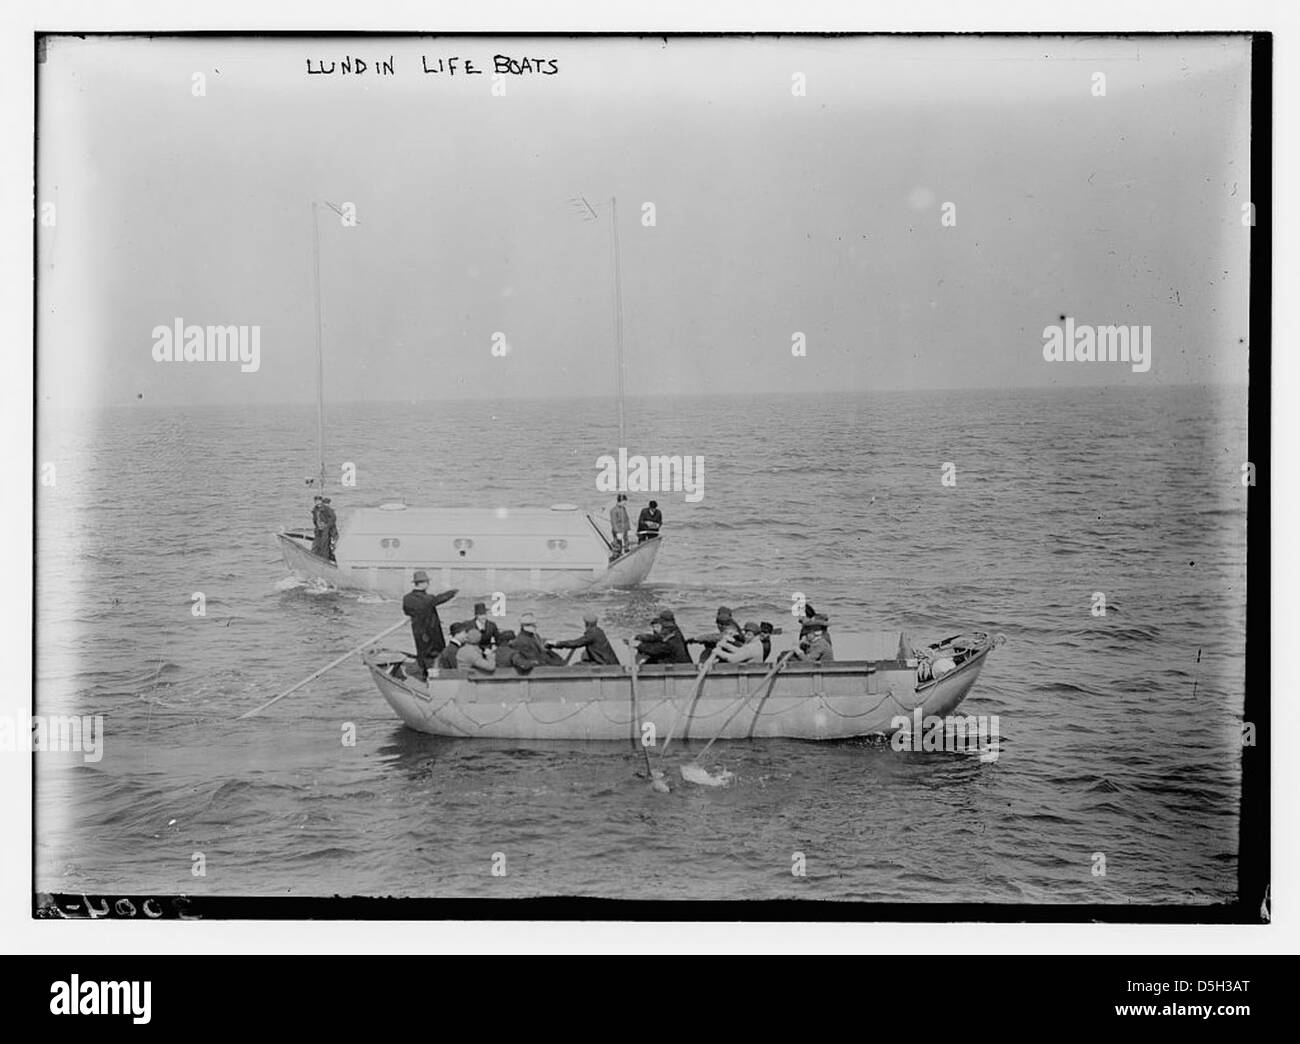 Lundin lifeboats (LOC) Stock Photo